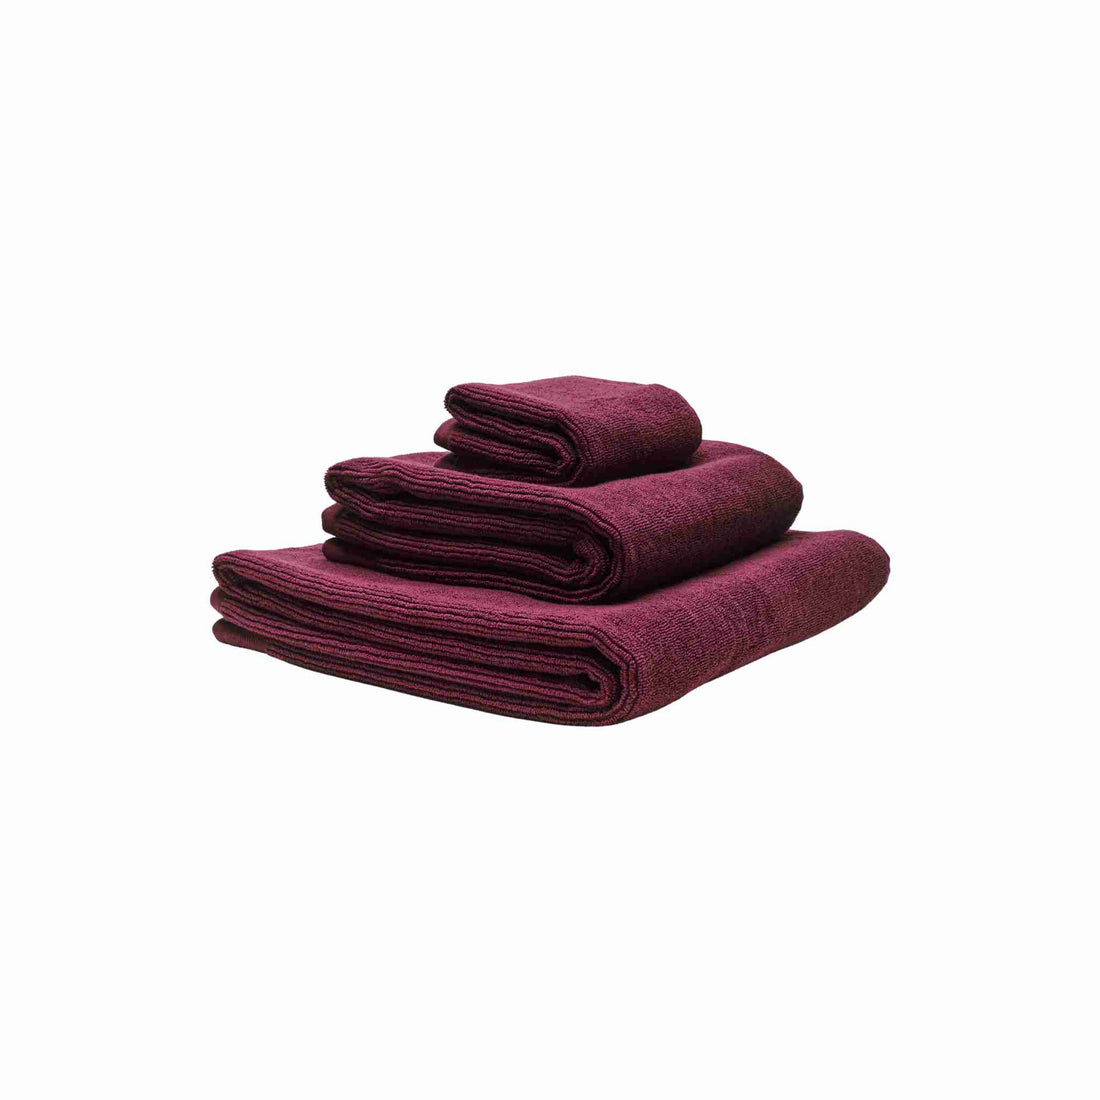 Økologiske håndklæder i farven bordeaux